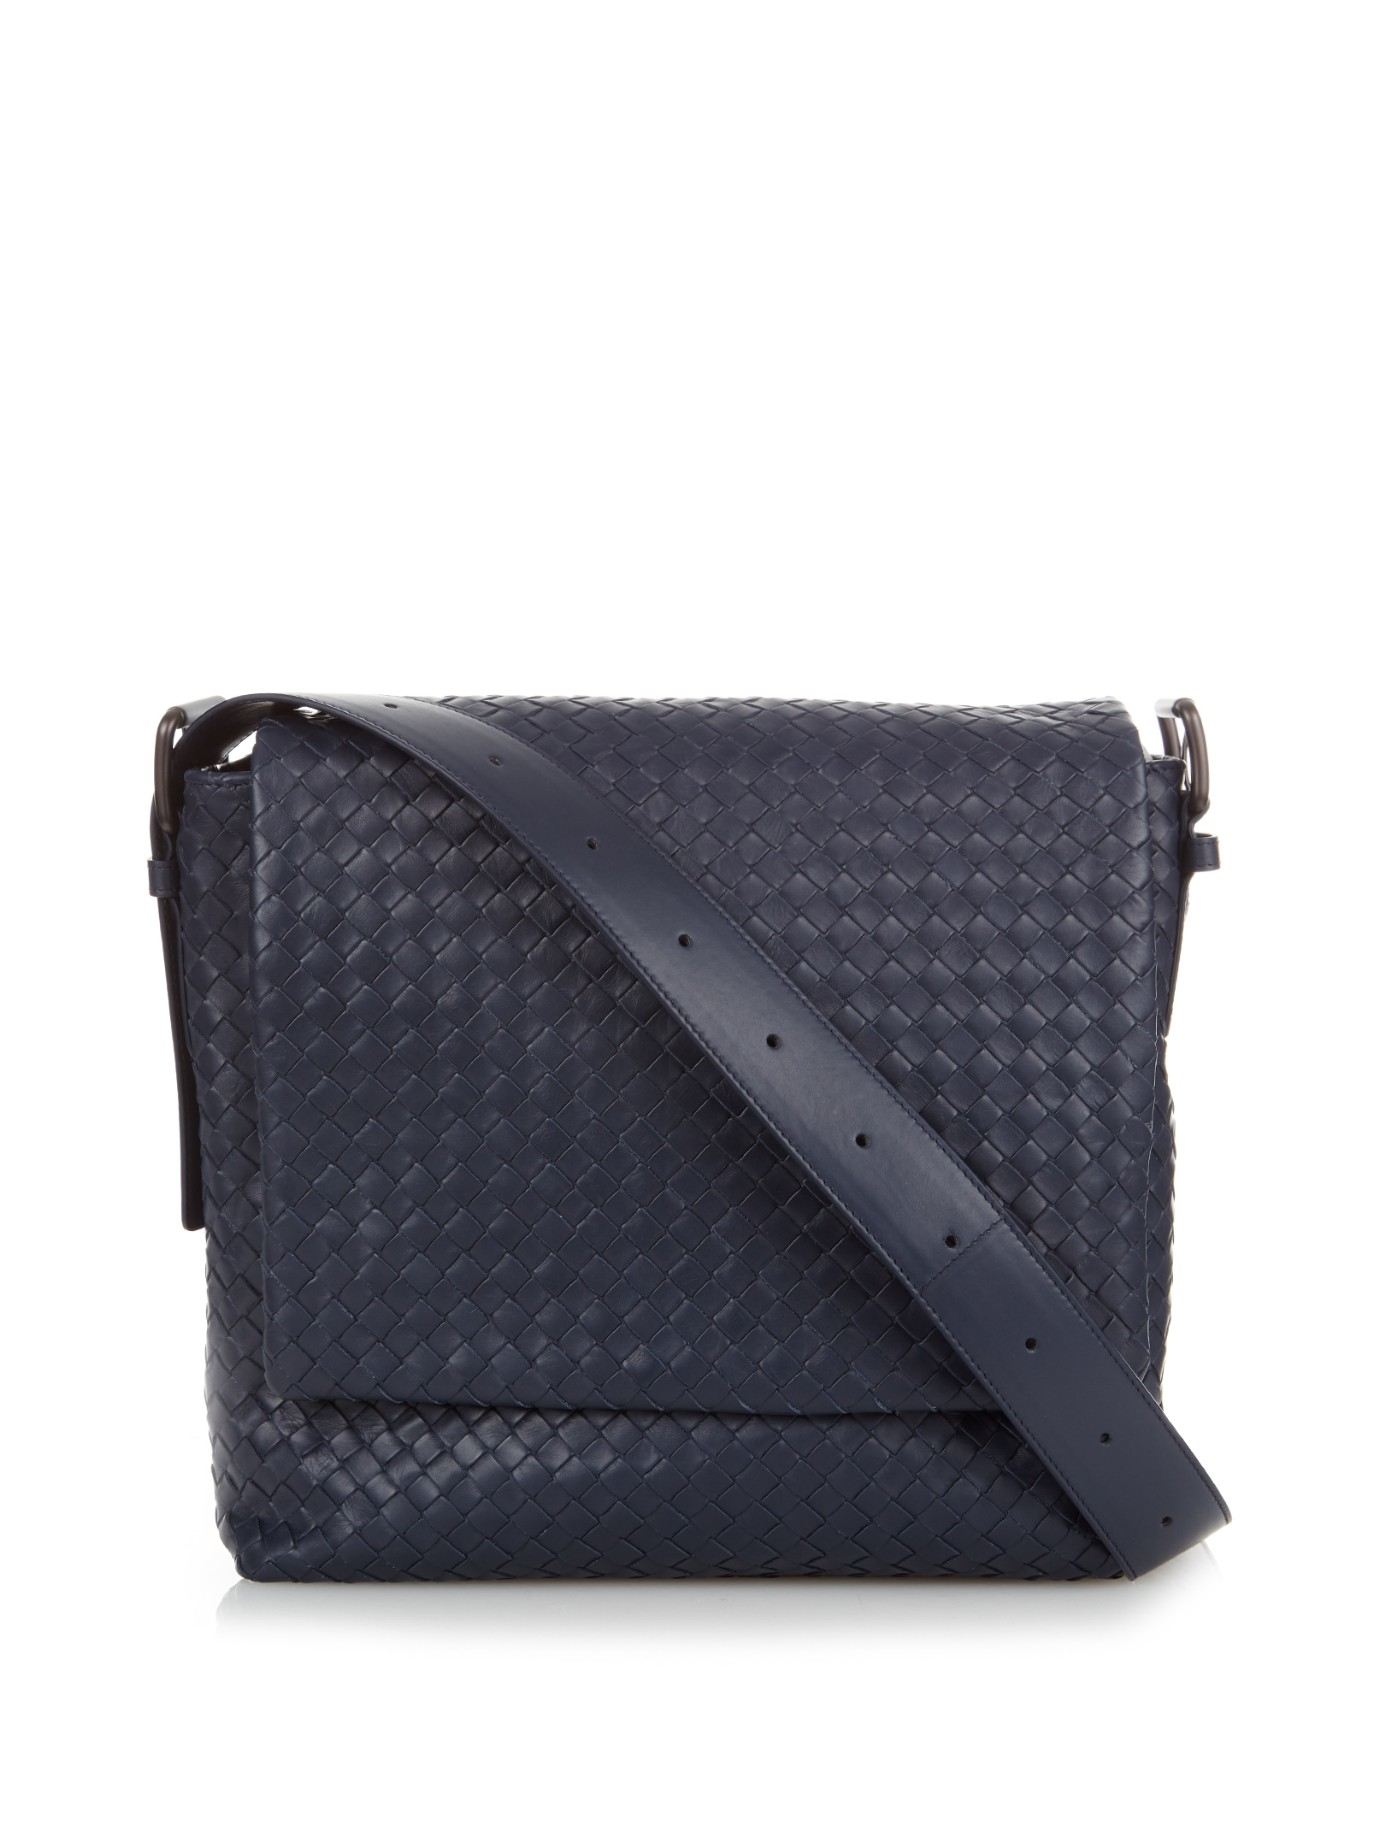 Bottega Veneta Intrecciato Leather Messenger Bag in Blue for Men - Lyst